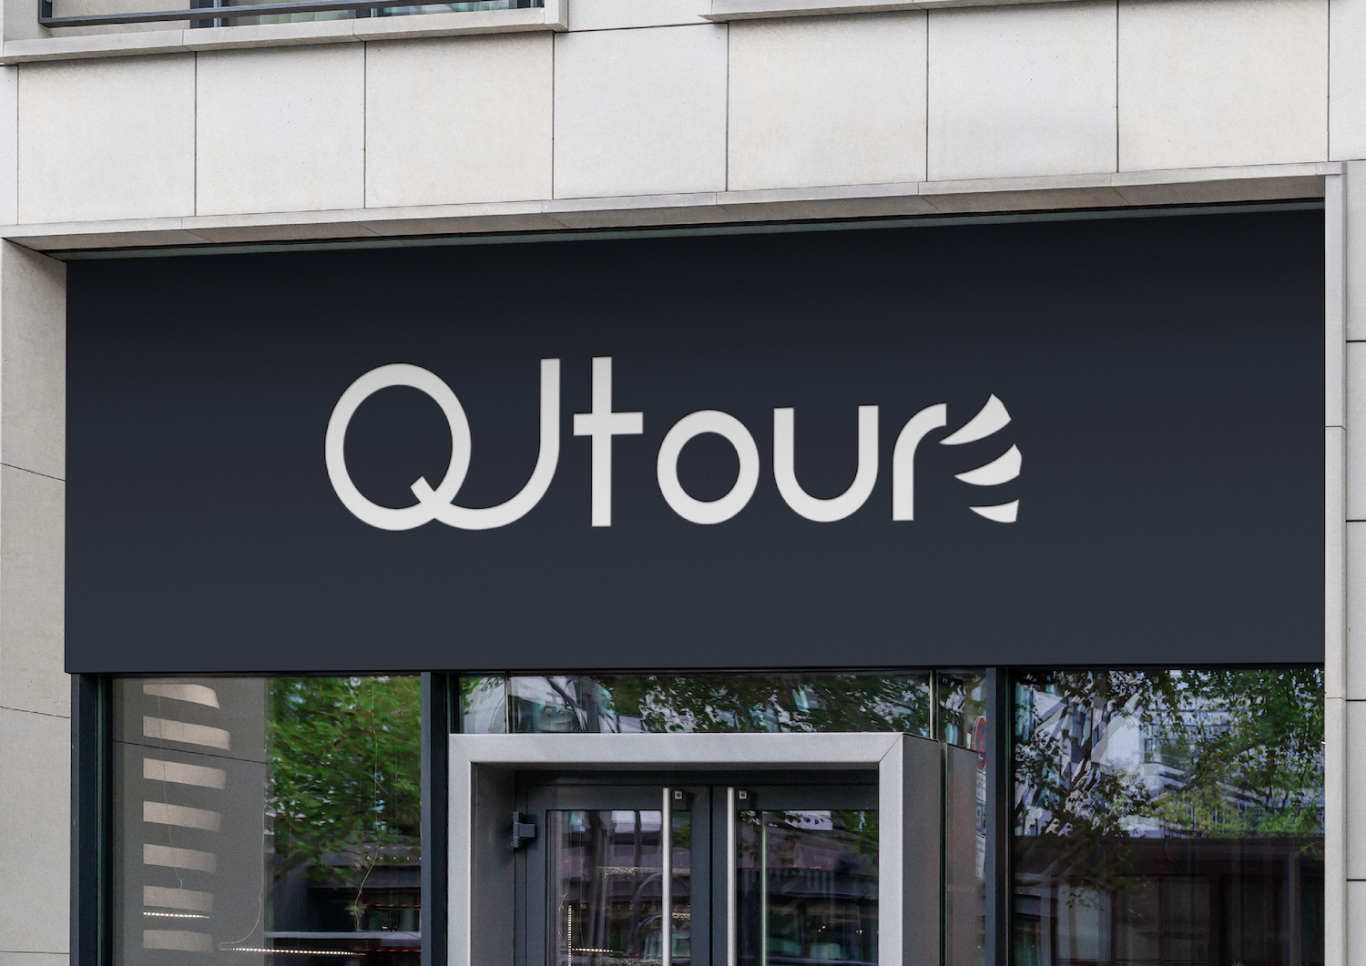 QJtour 旅行品牌logo/品牌设计图0